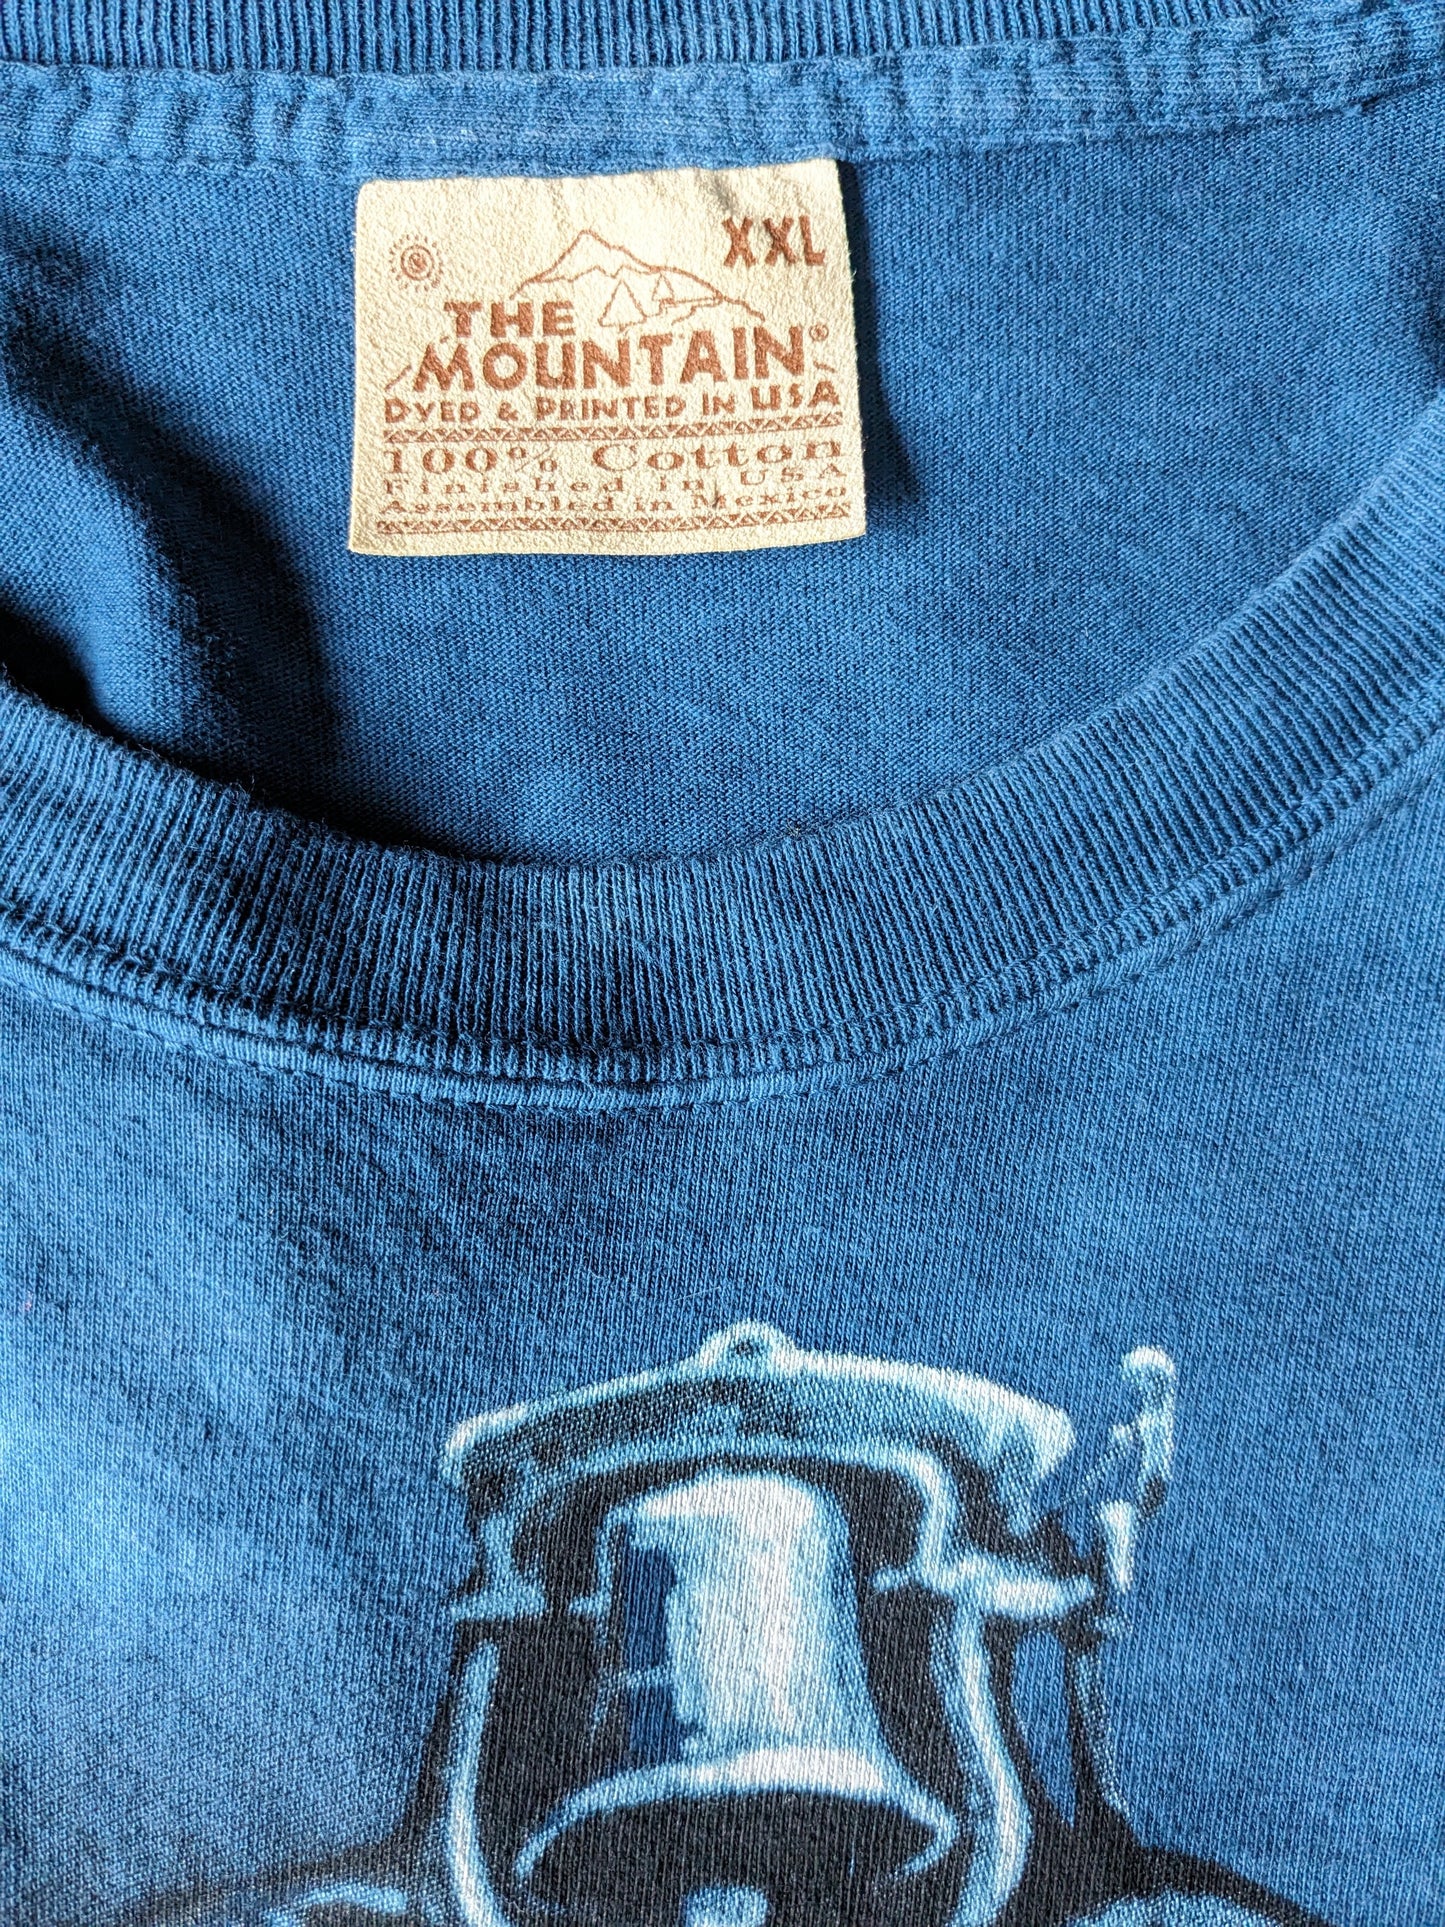 La chemise de montagne. Bleu foncé avec imprimé locomotive. Taille 2xl / xxl.